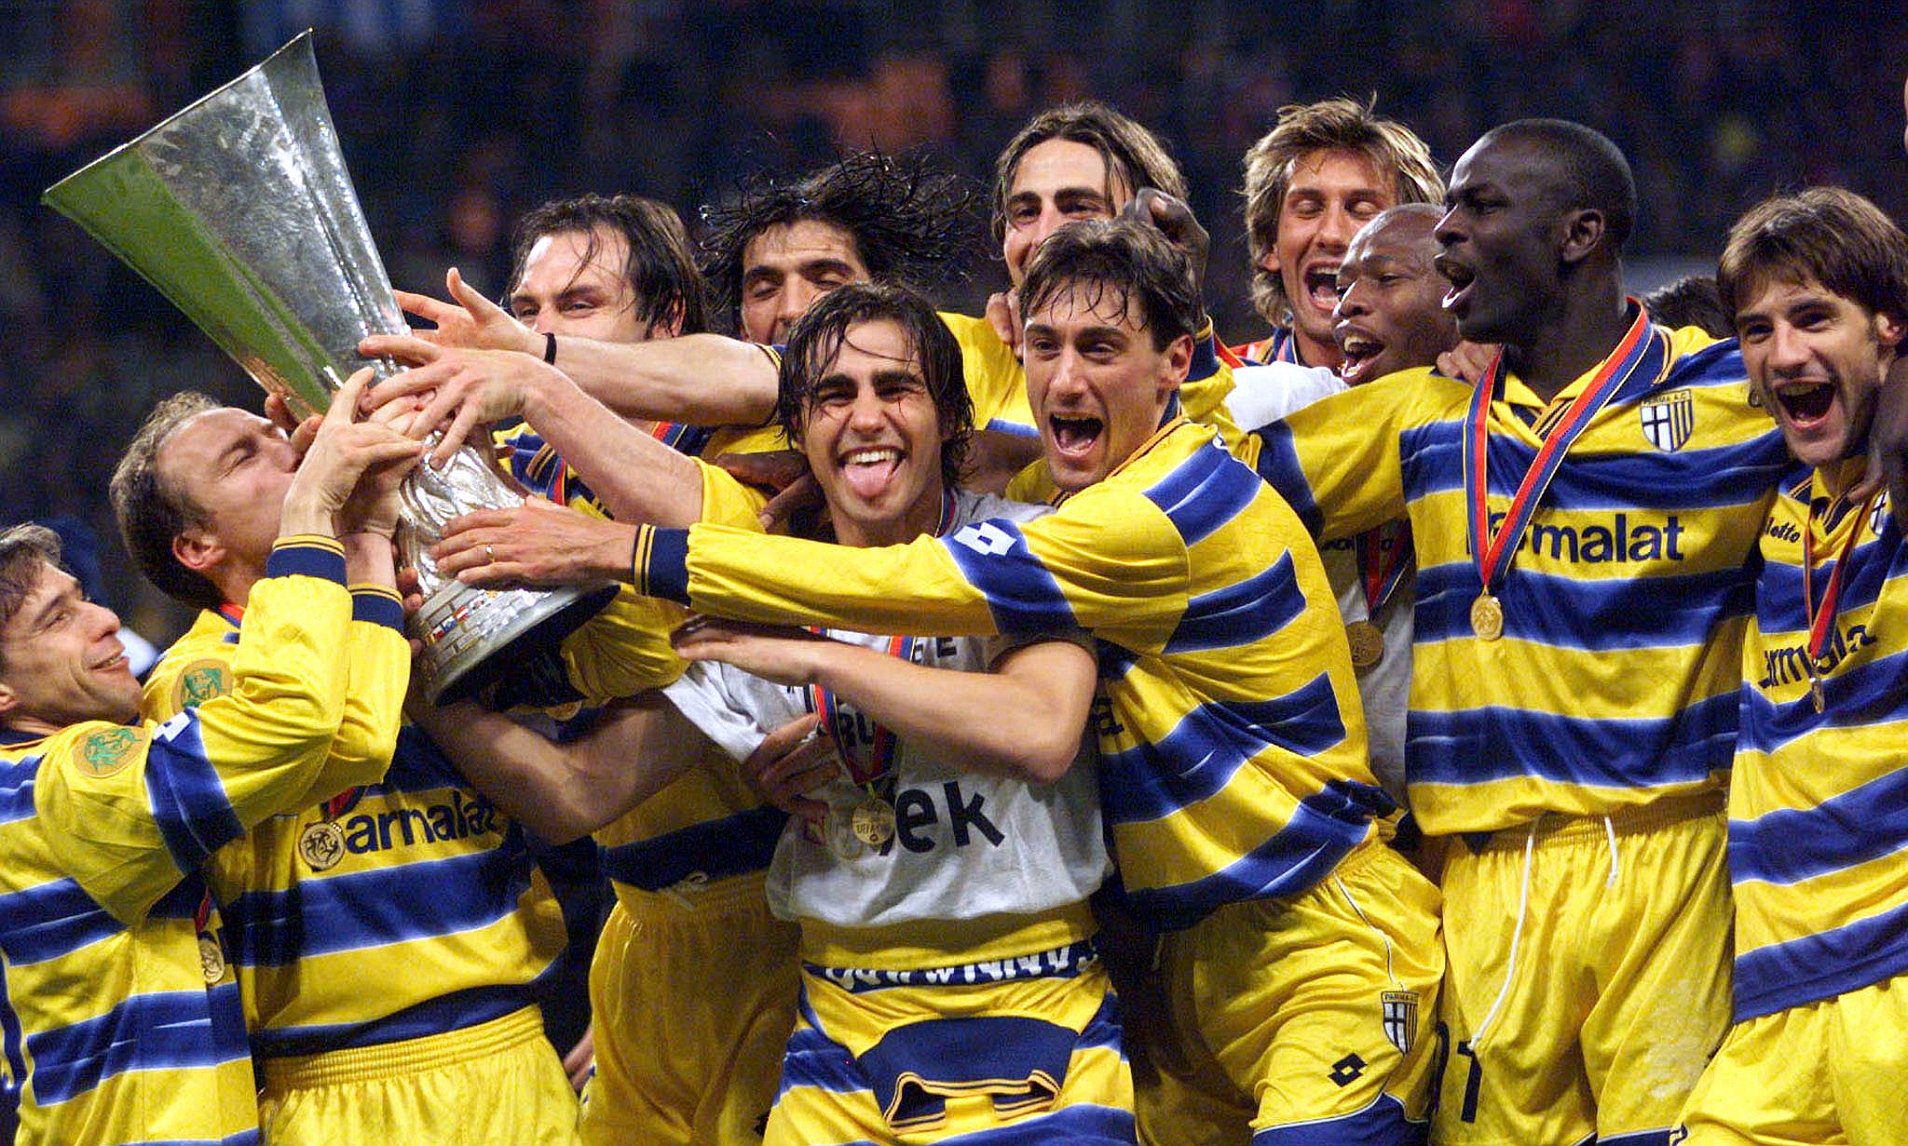 Elenco do Parma que fez história no futebol (Foto: Divulgação)